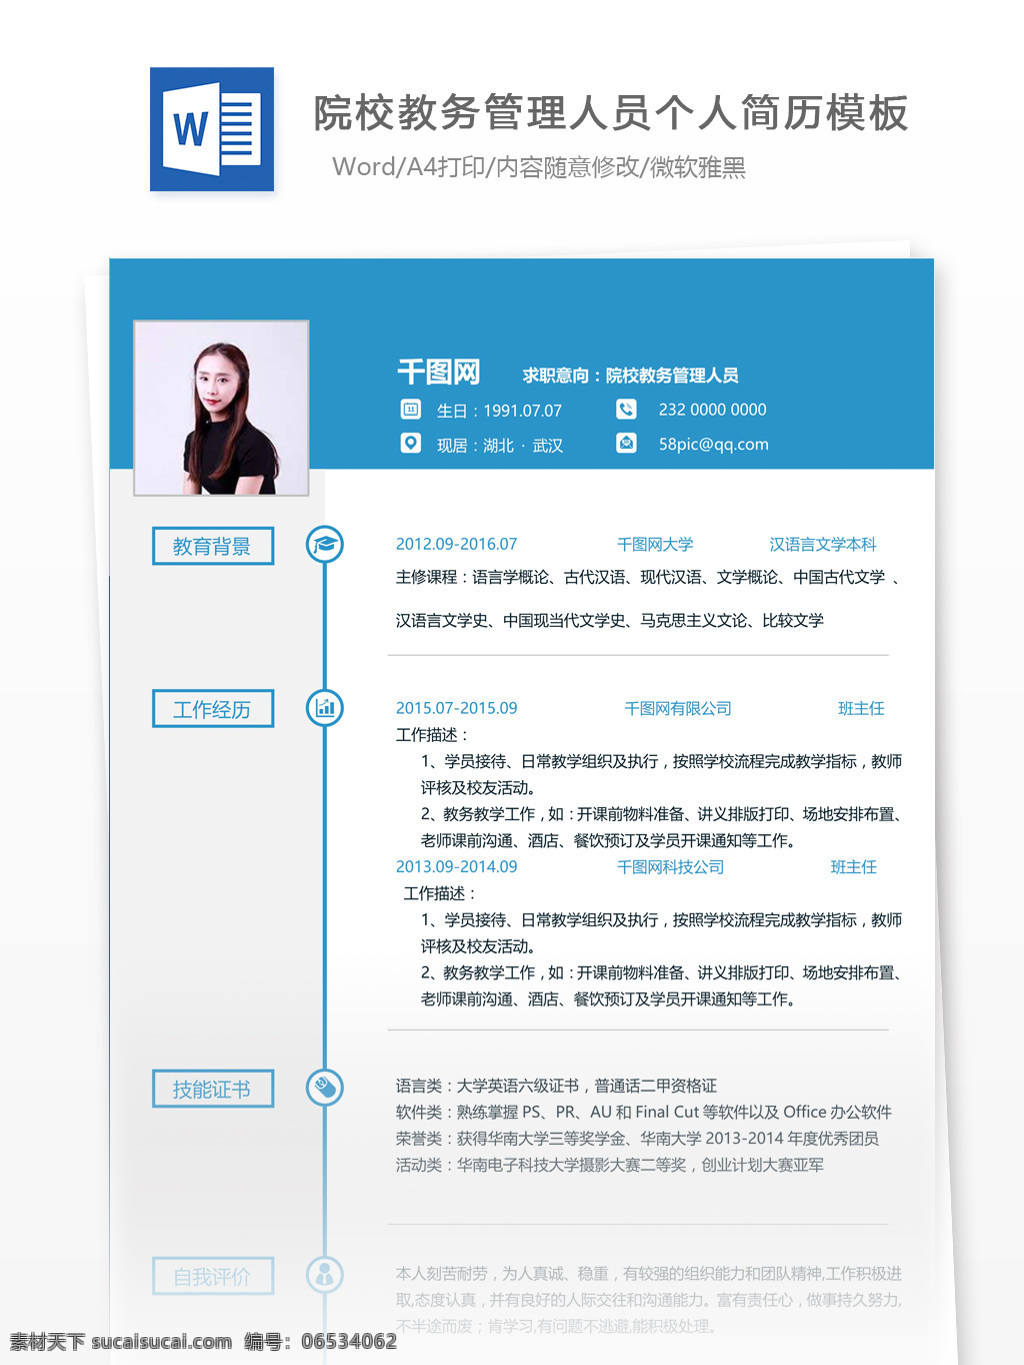 北京大学 院校 校务 管理 人员 个人简历 模板 简历 简历模板 应届毕业生 个人简历模板 教务管理